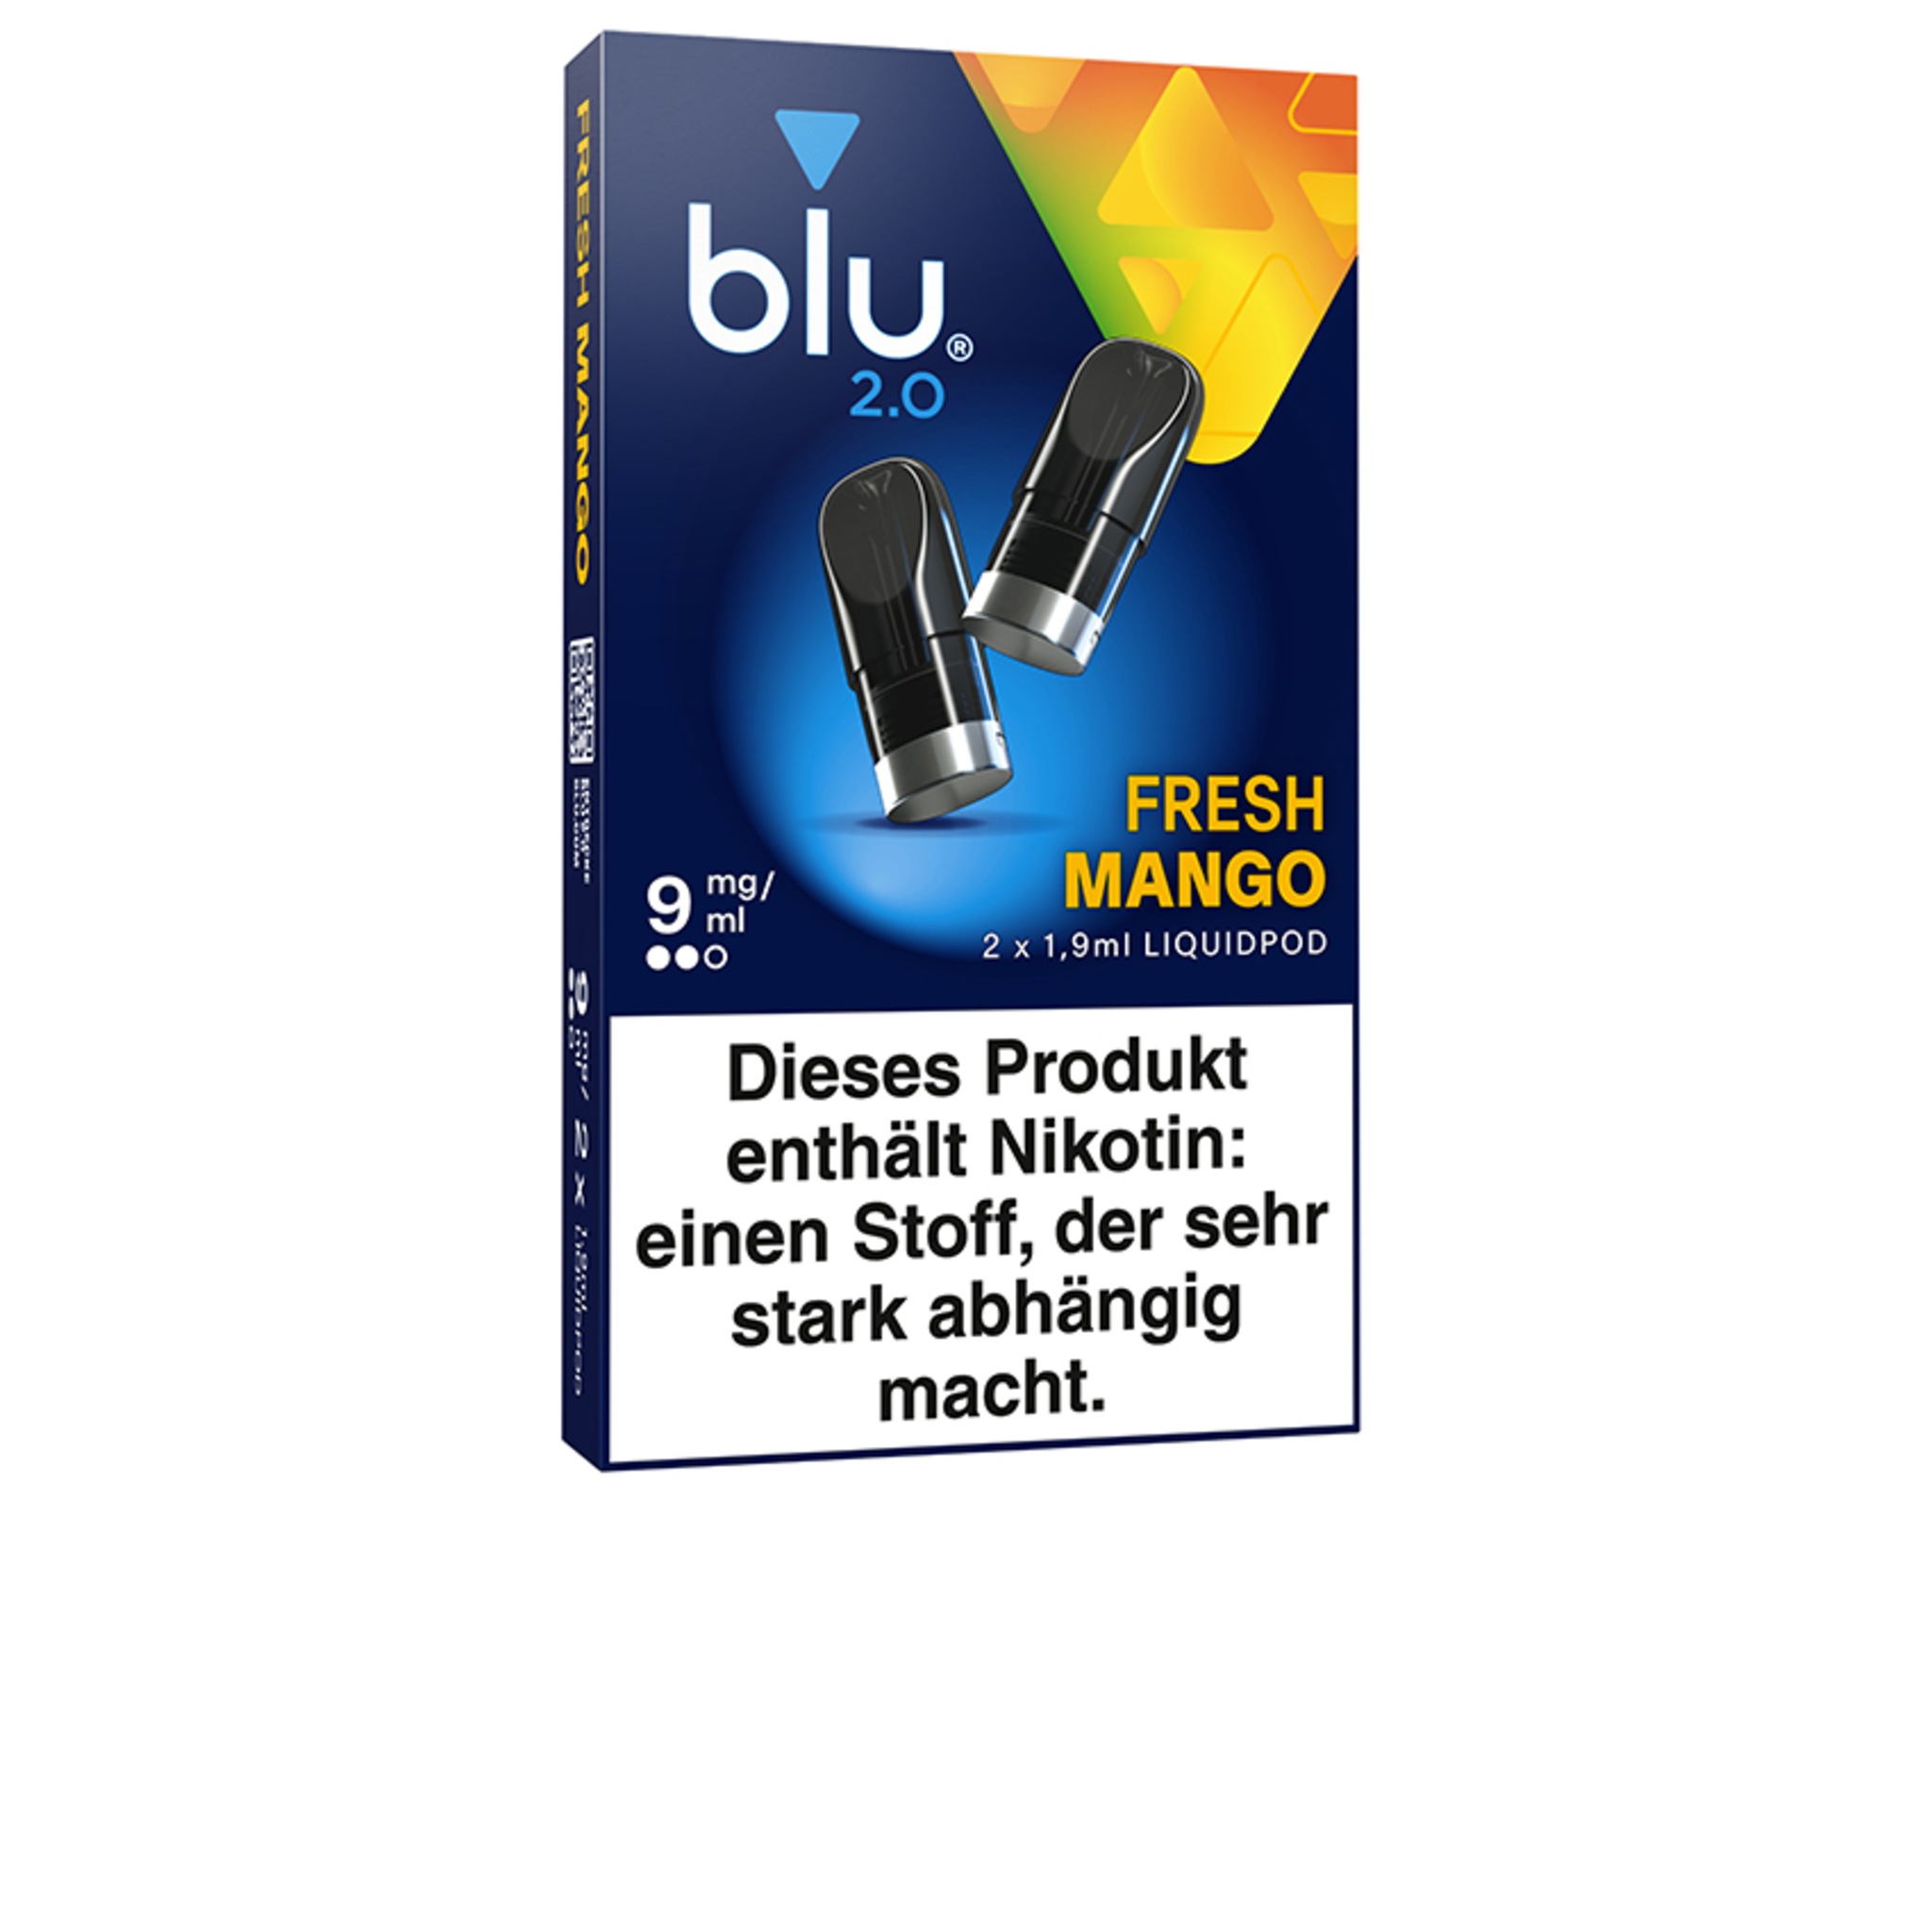 Blu 2.0 - Fresh Mango